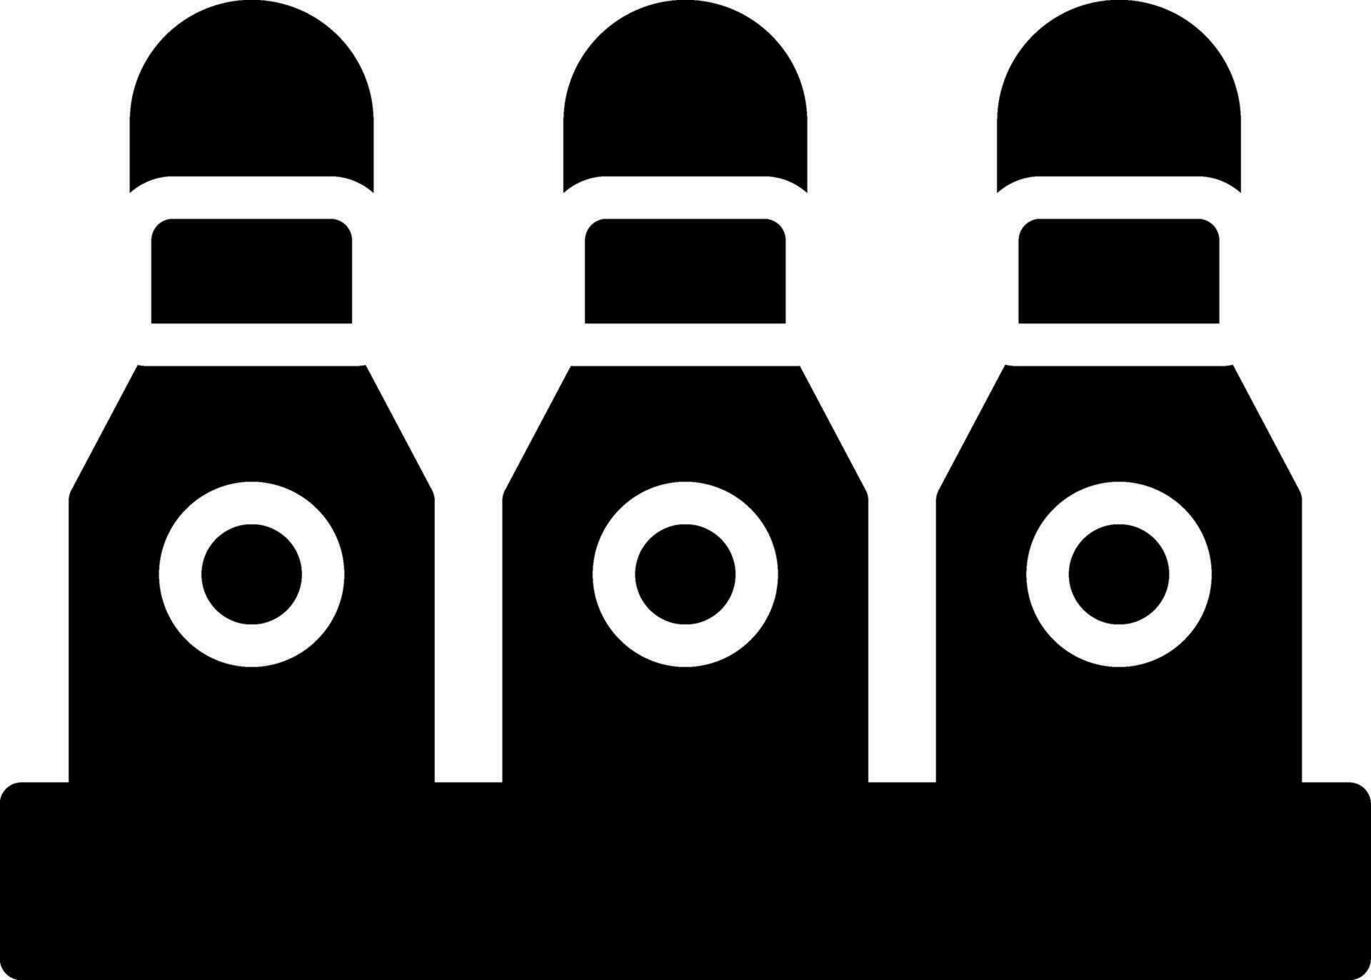 Bottles Creative Icon Design vector